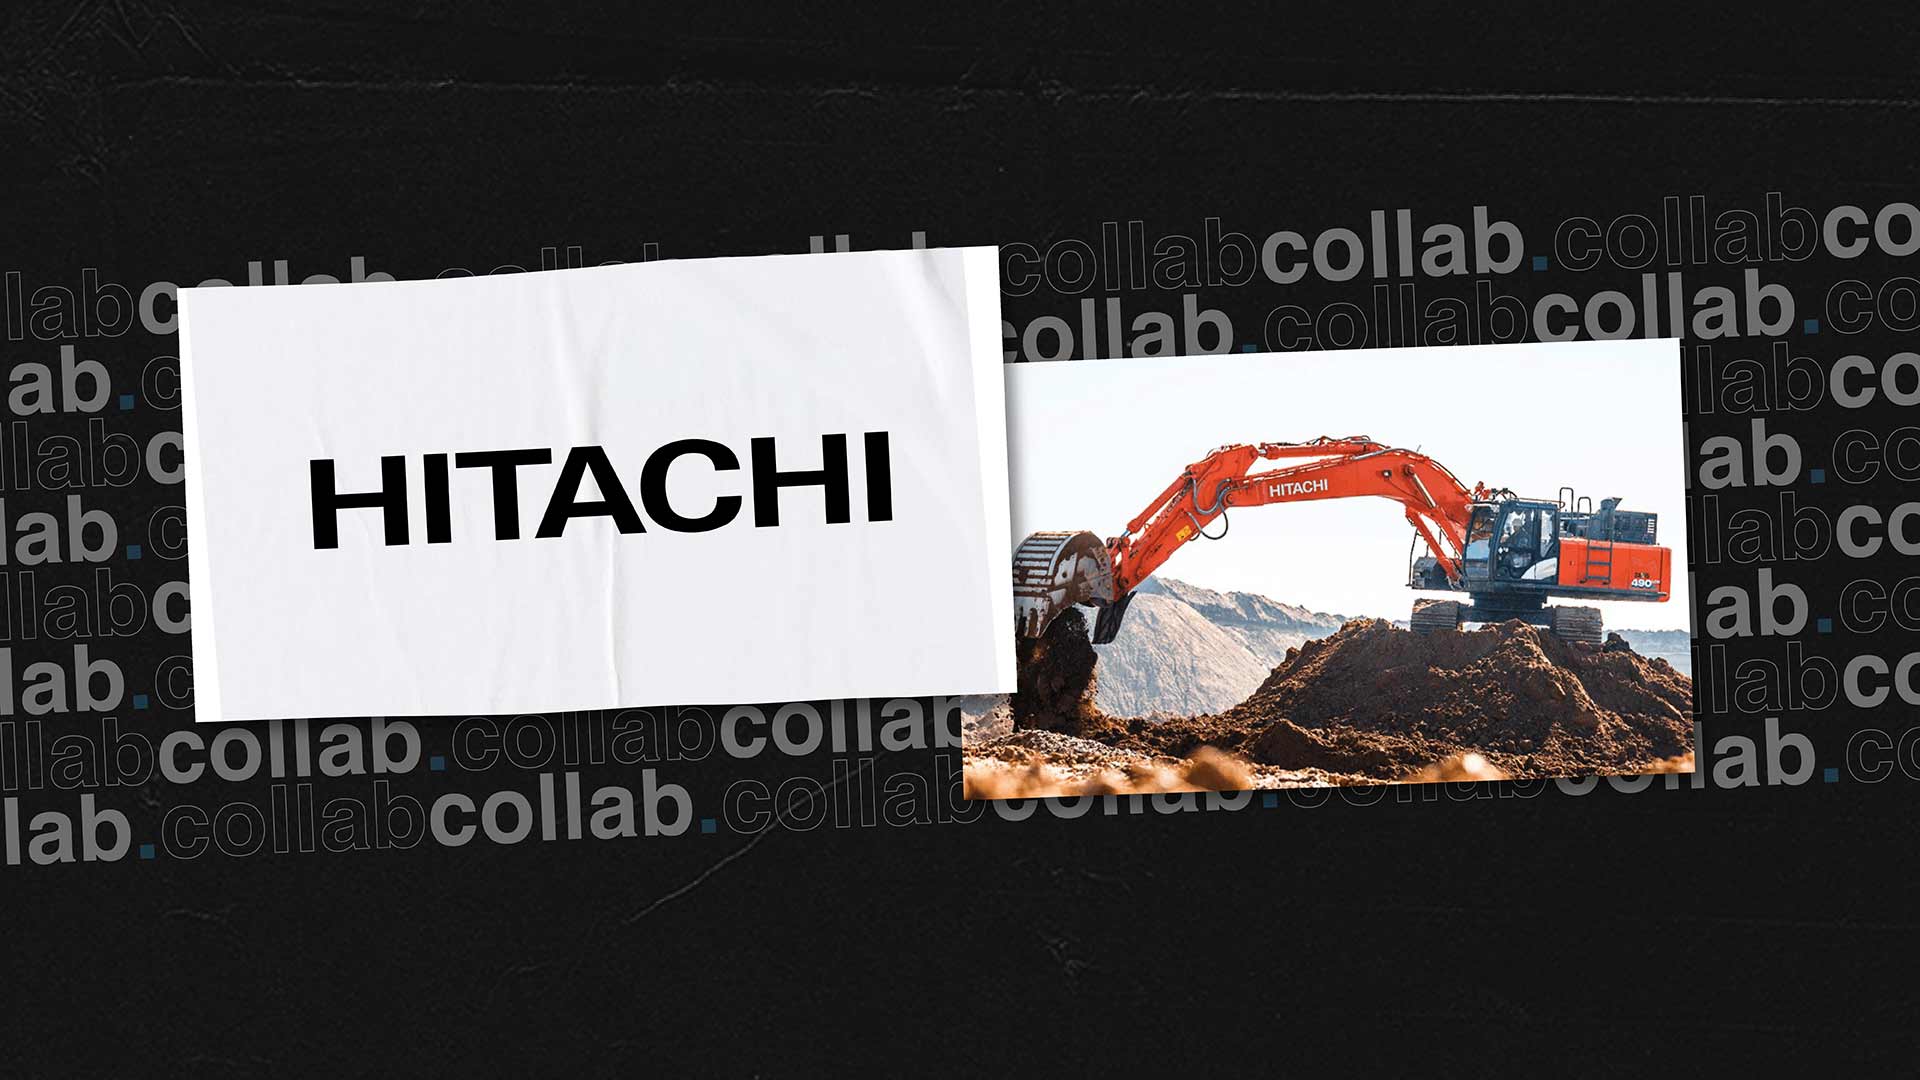 collaboration hitachi